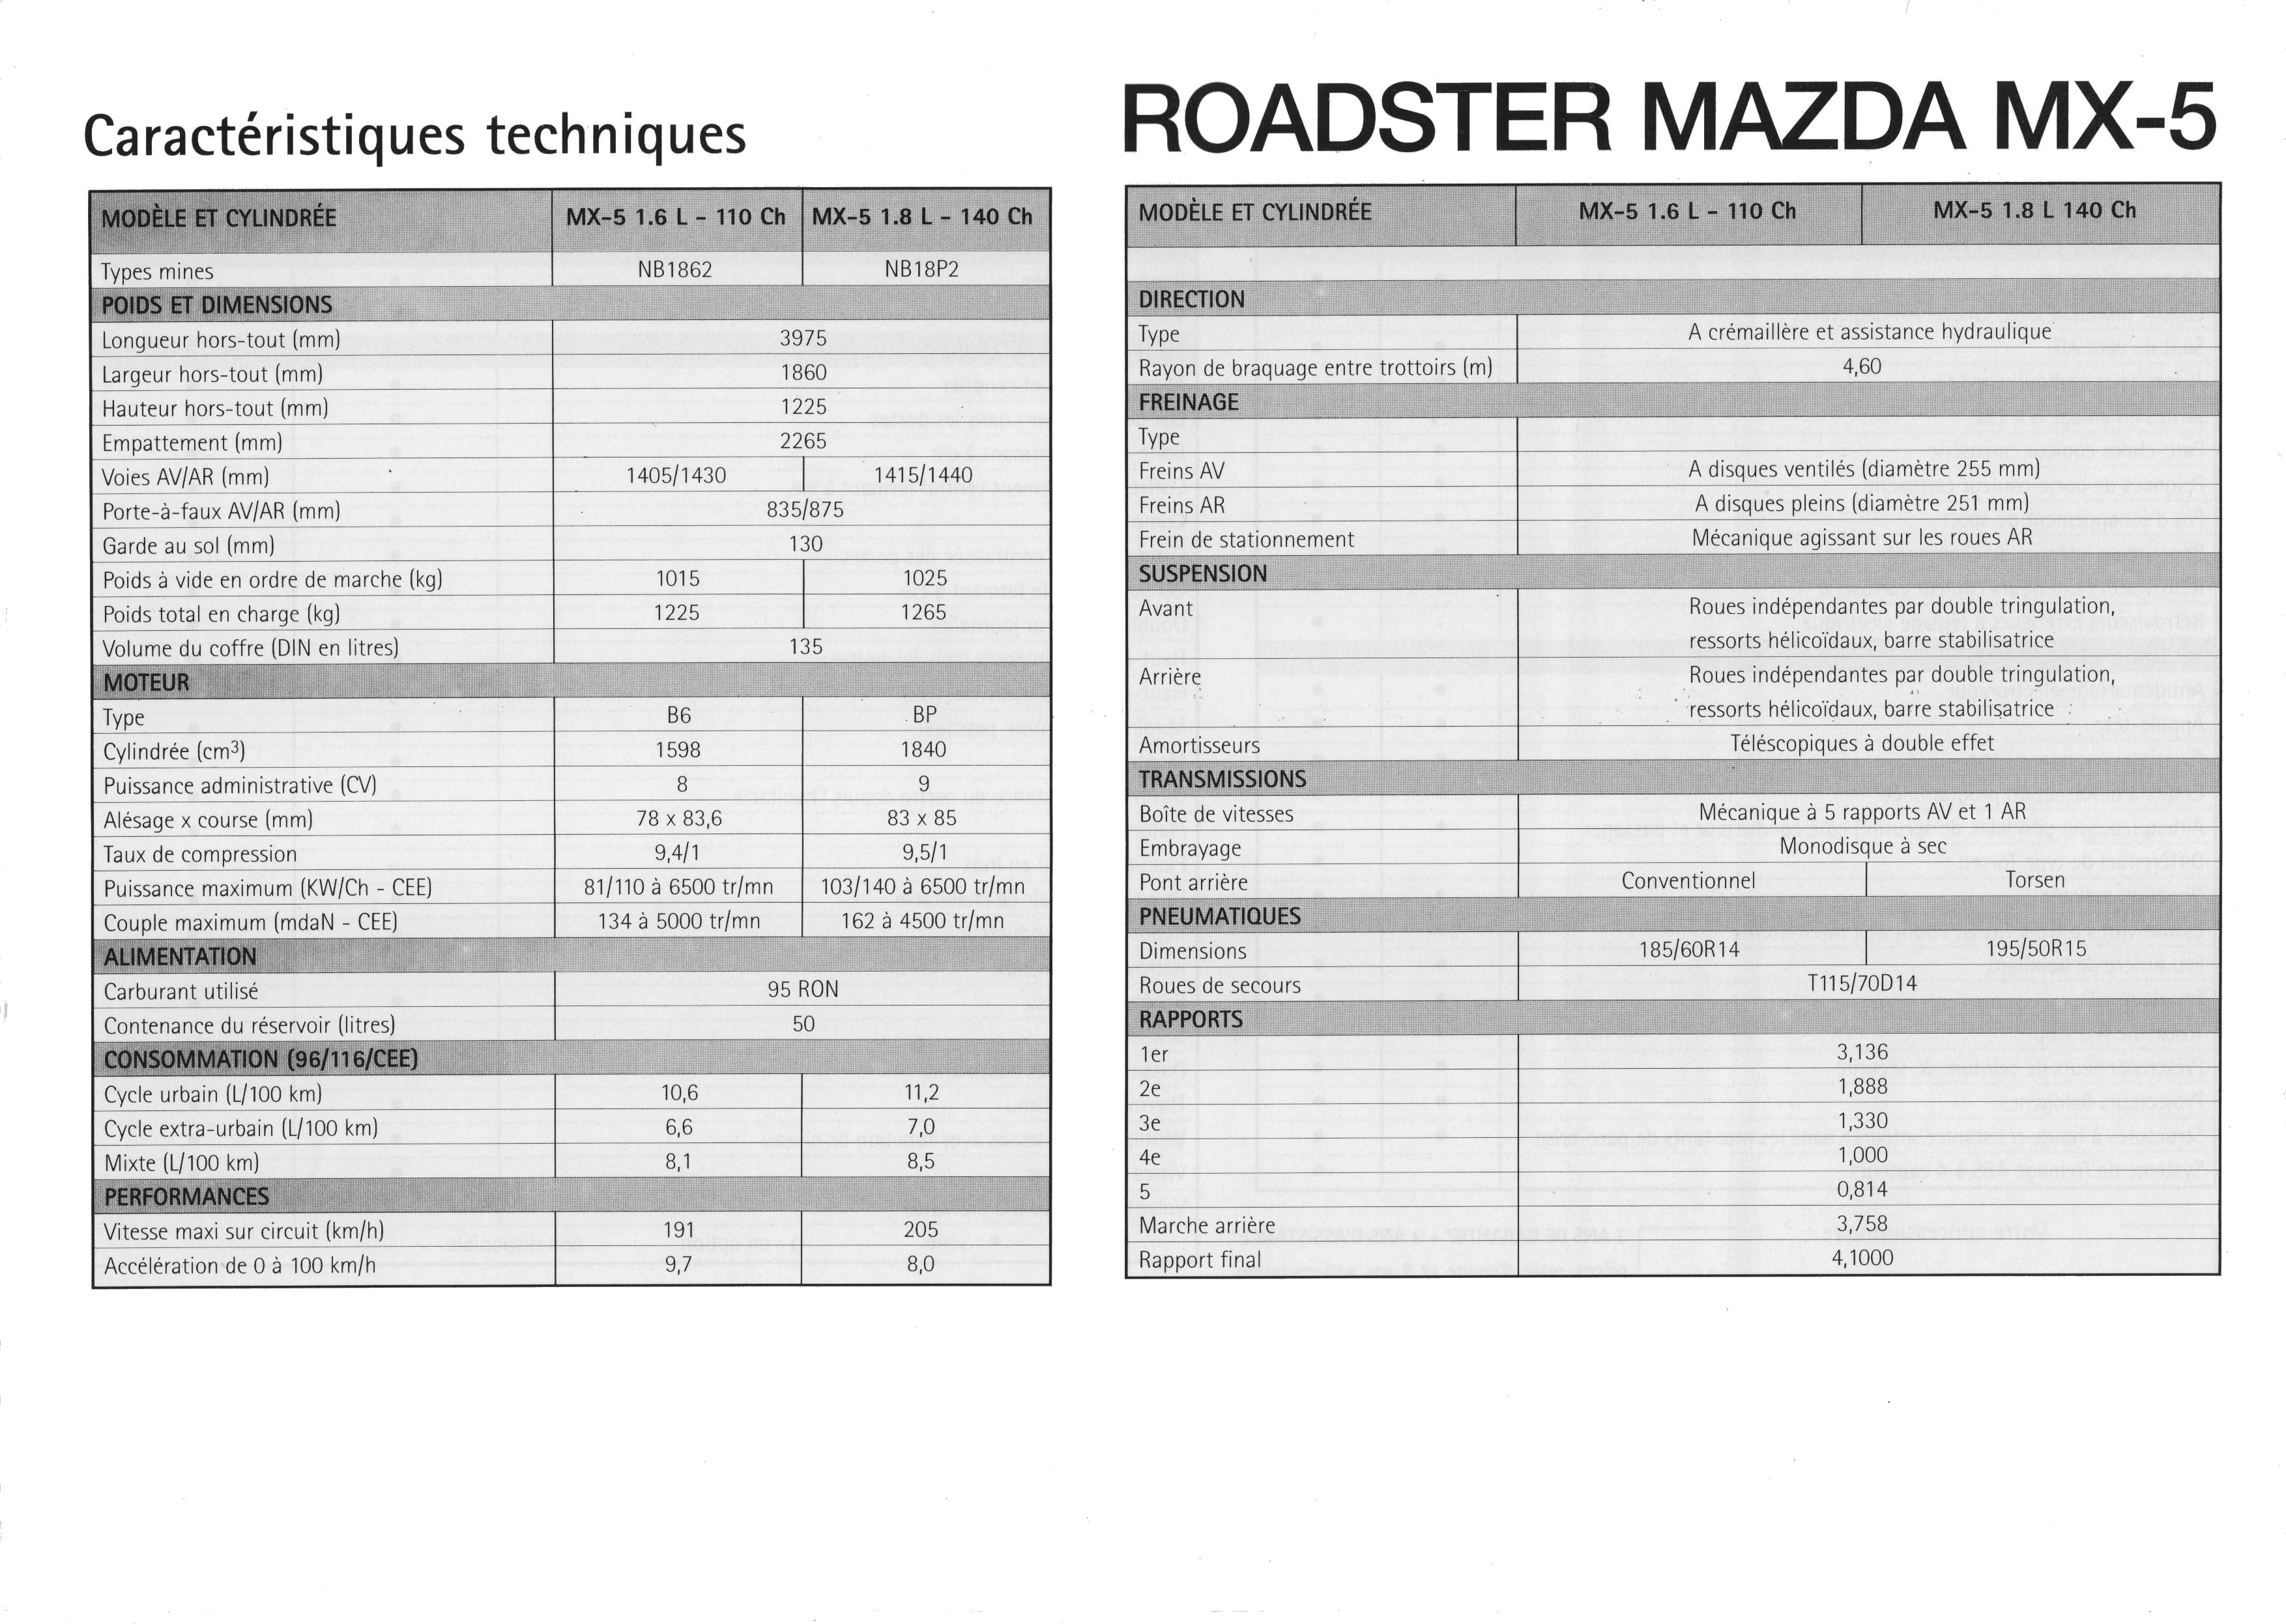 1999 Mazda MX 5 brochure